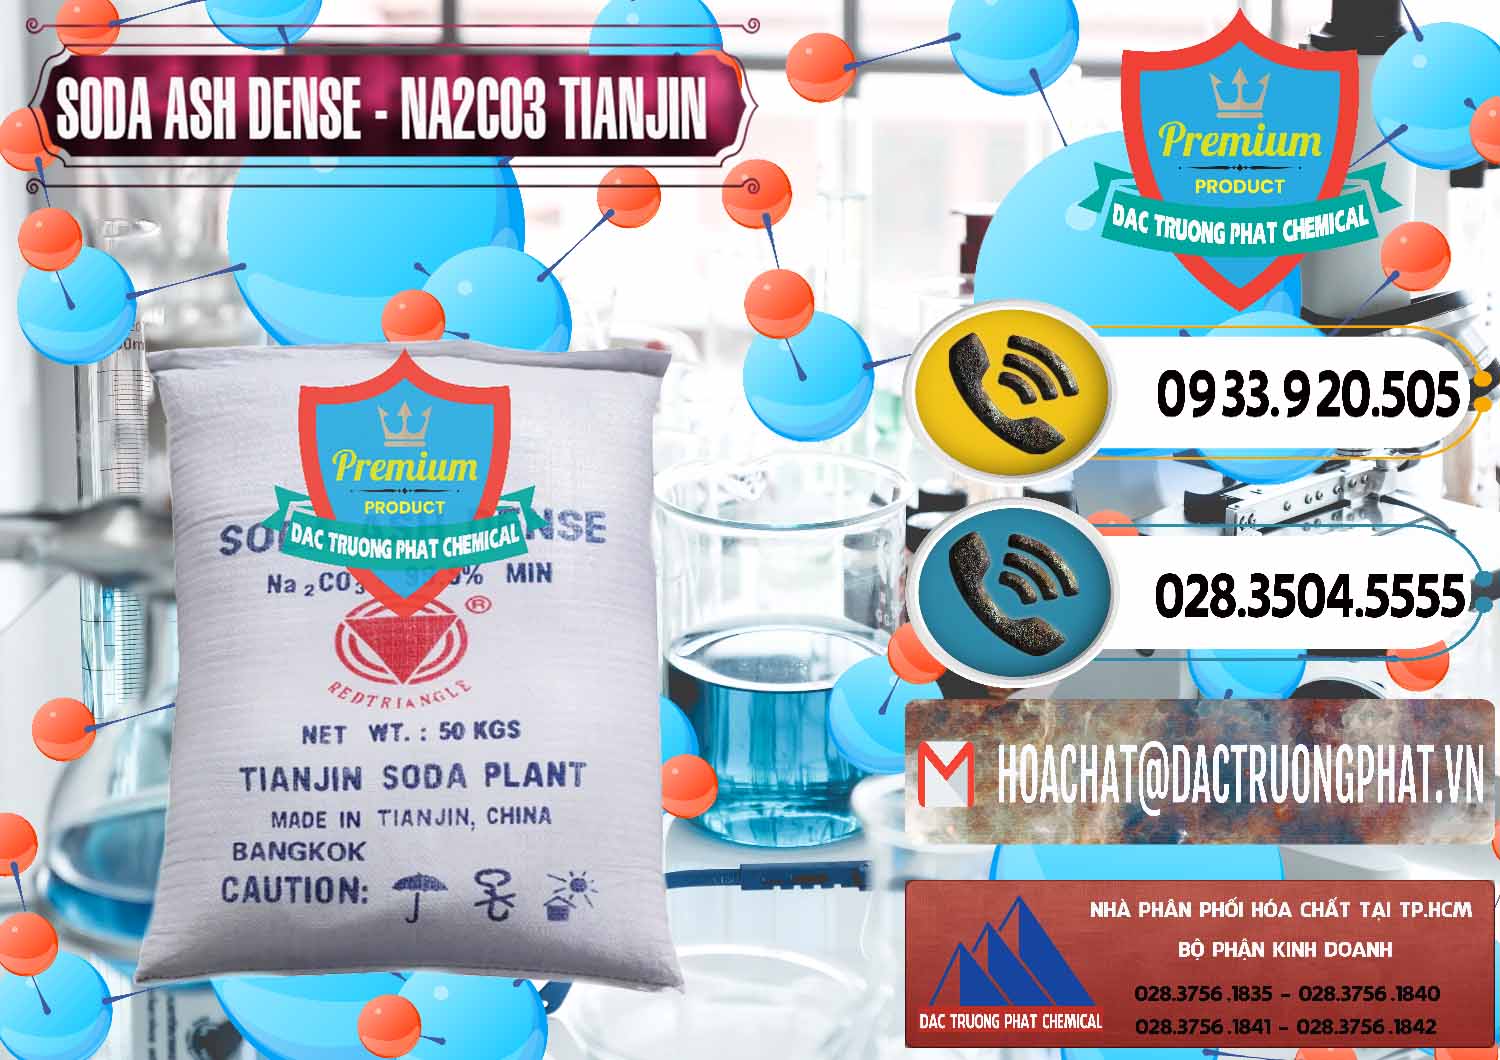 Nơi chuyên bán _ phân phối Soda Ash Dense - NA2CO3 Tianjin Trung Quốc China - 0336 - Công ty bán & phân phối hóa chất tại TP.HCM - hoachatdetnhuom.vn